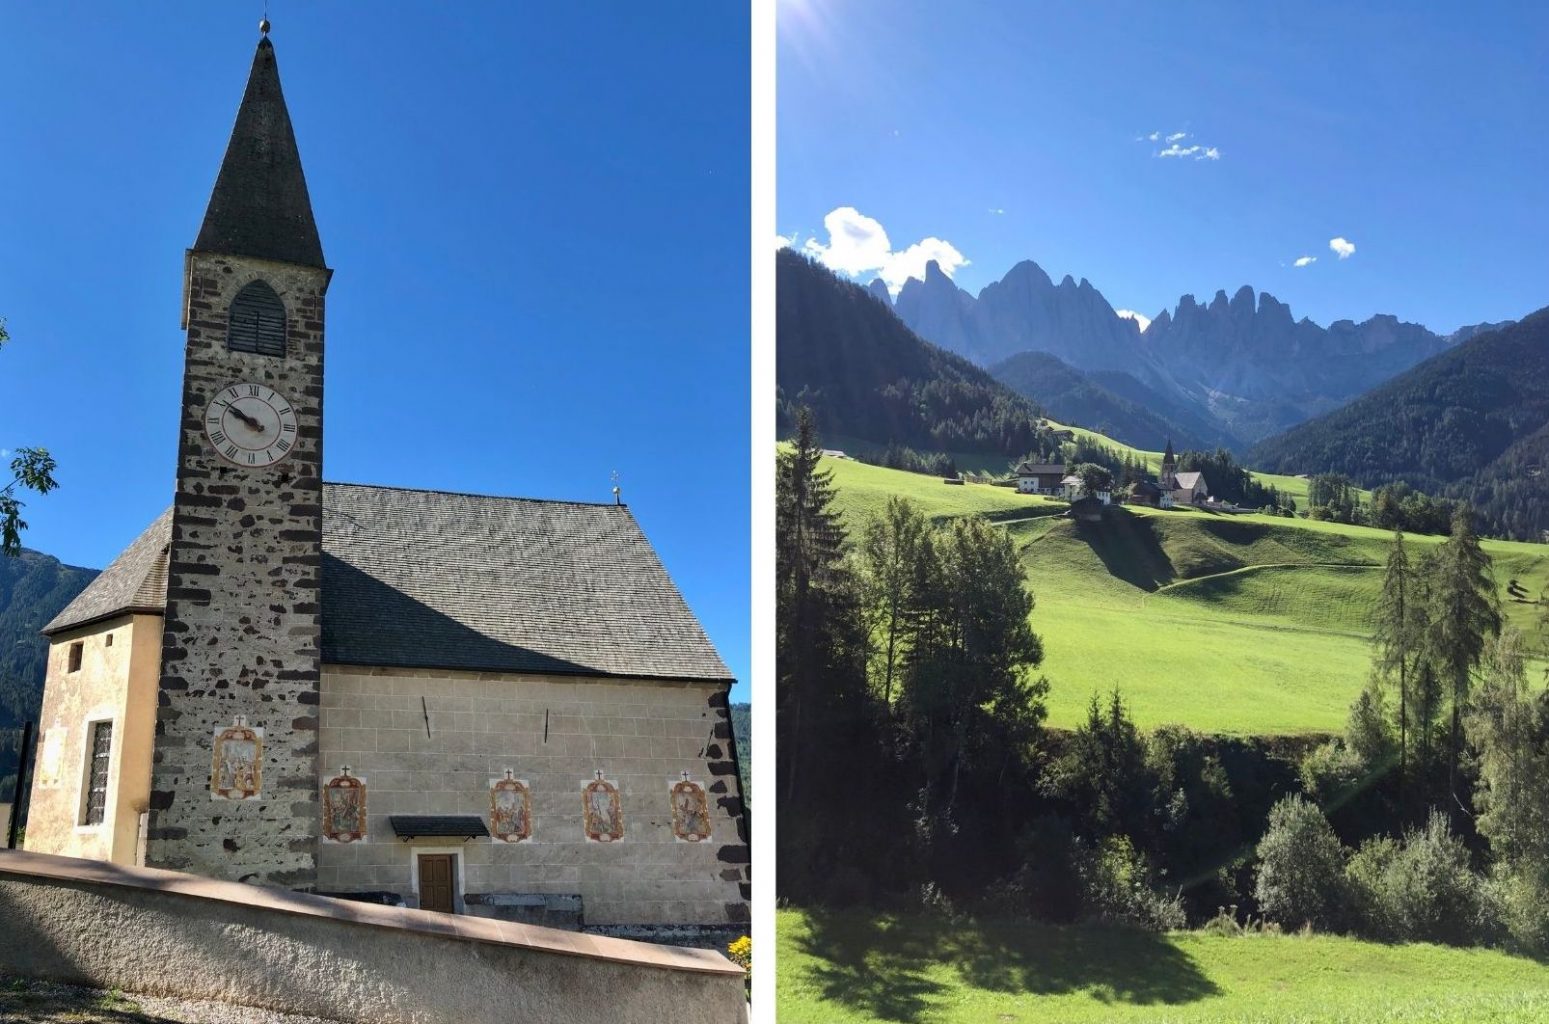 iglesia de St. Magdalena. Ruta de 14 días por Dolomitas en furgoneta camper desde España